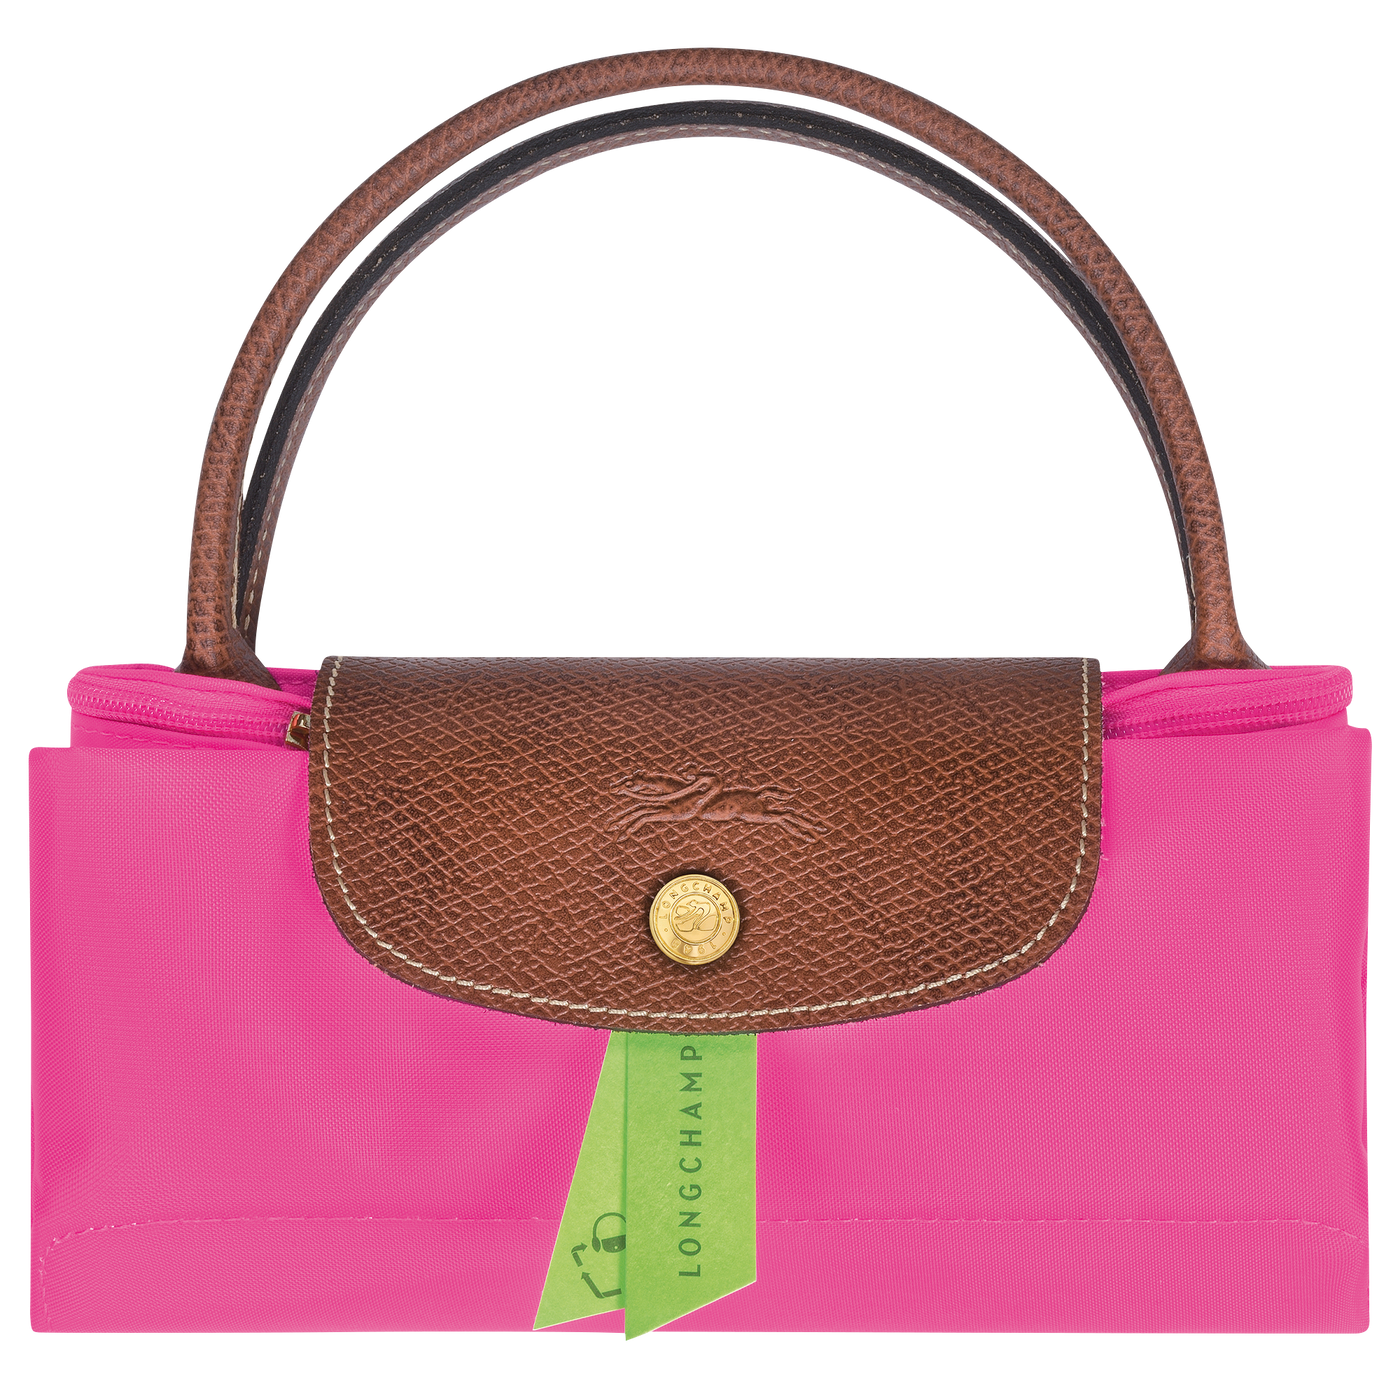 Le Pliage Original Top handle bag S - 1621089